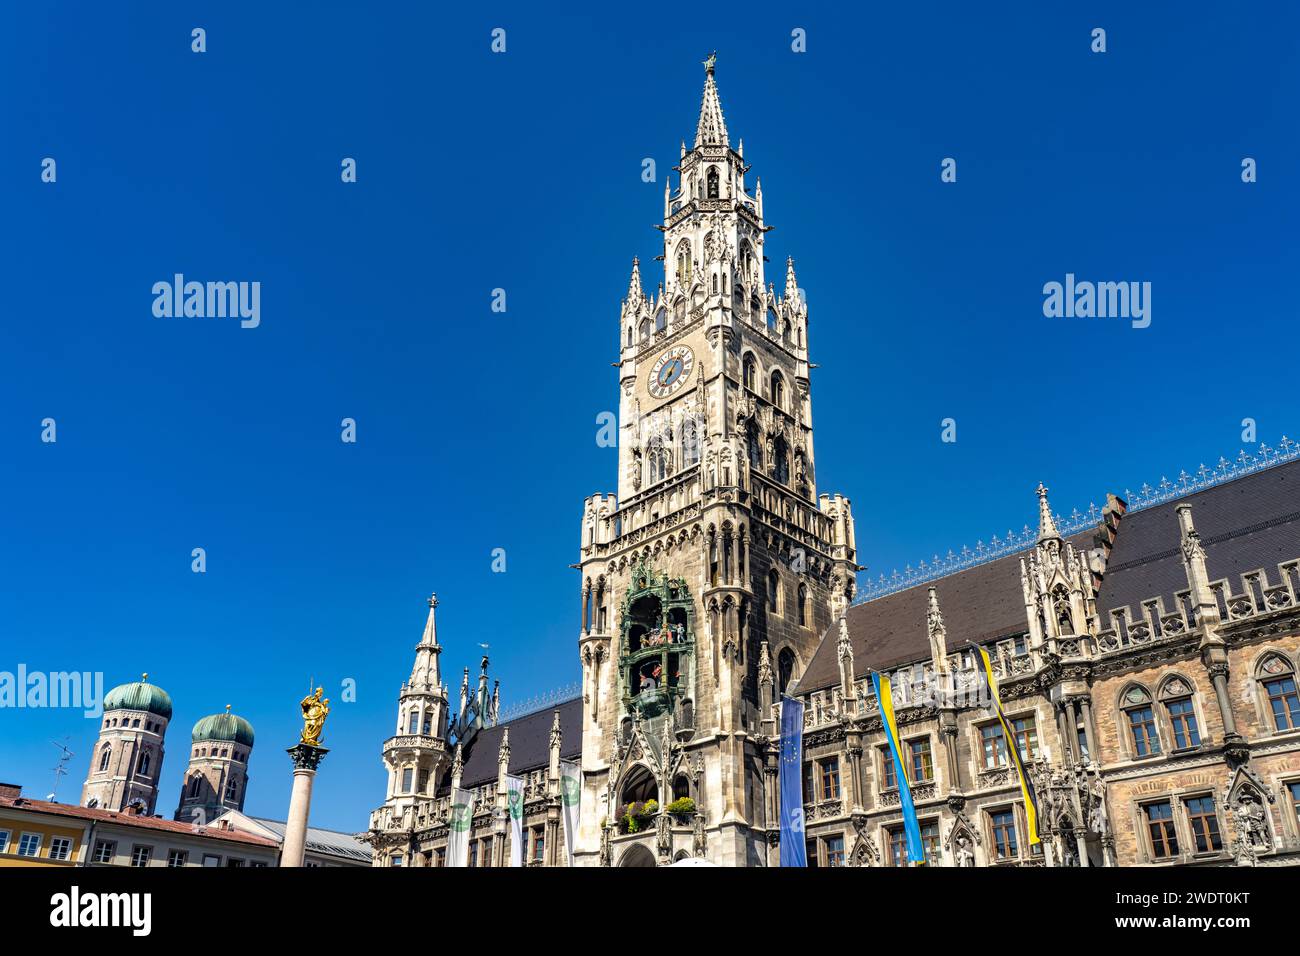 Das neue Rathaus in Muenchen, Bayern, Deutschland  |  The New Town Hall in Munich, Bavaria, Germany Stock Photo